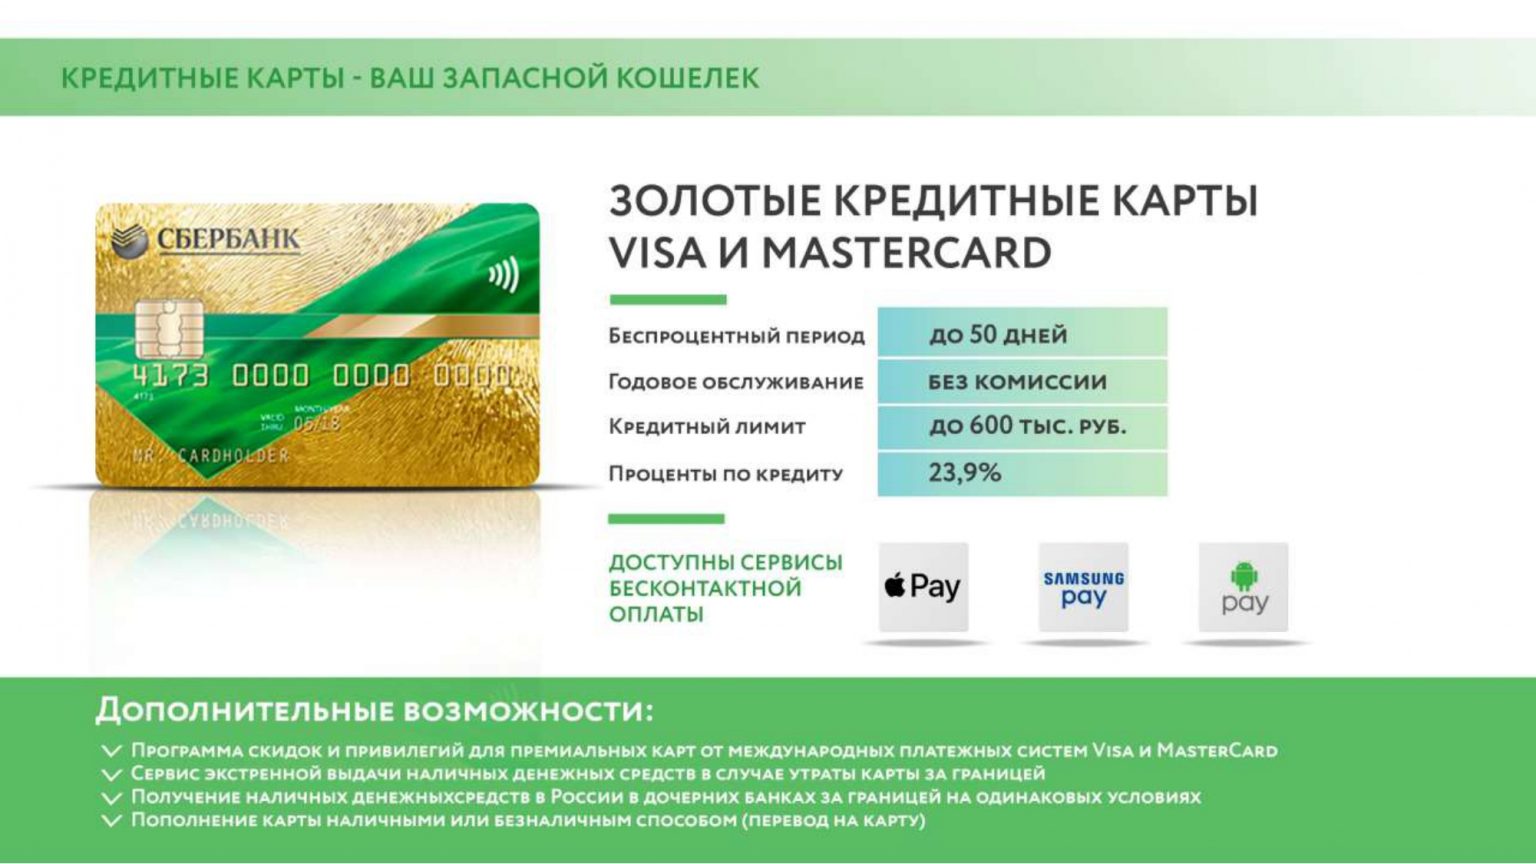 Займ 20000 рублей на карту сбербанка круглосуточно